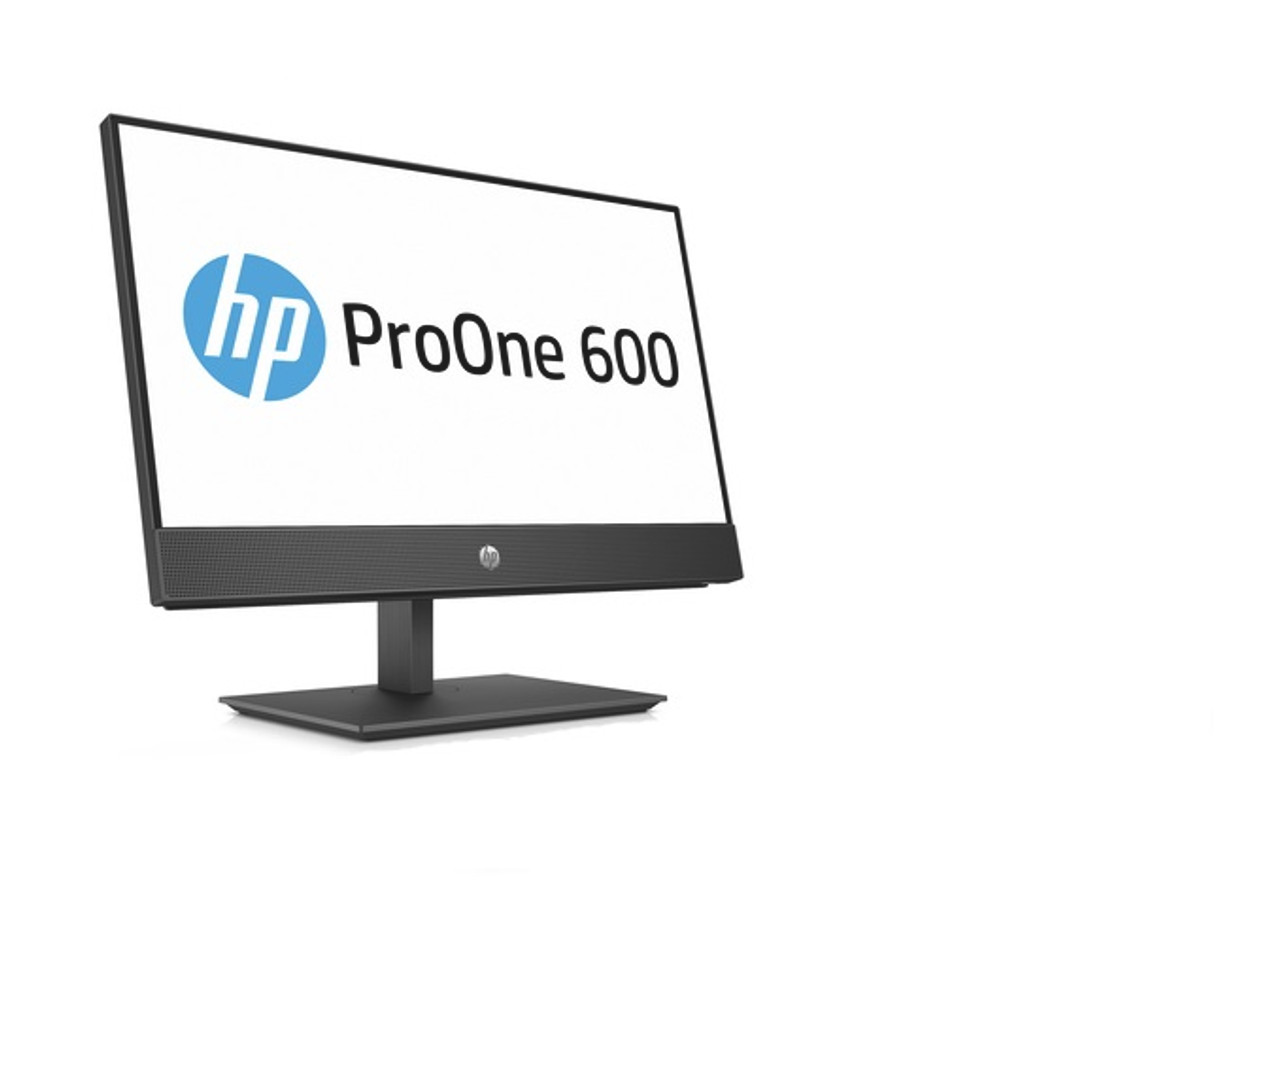 HP ProOne 600 G4 W10P-64 i5 8500 3.0GHz 256GB SSD 16GB(2x8GB) DDR4 2666  DVDRW 21.5FHD Cam